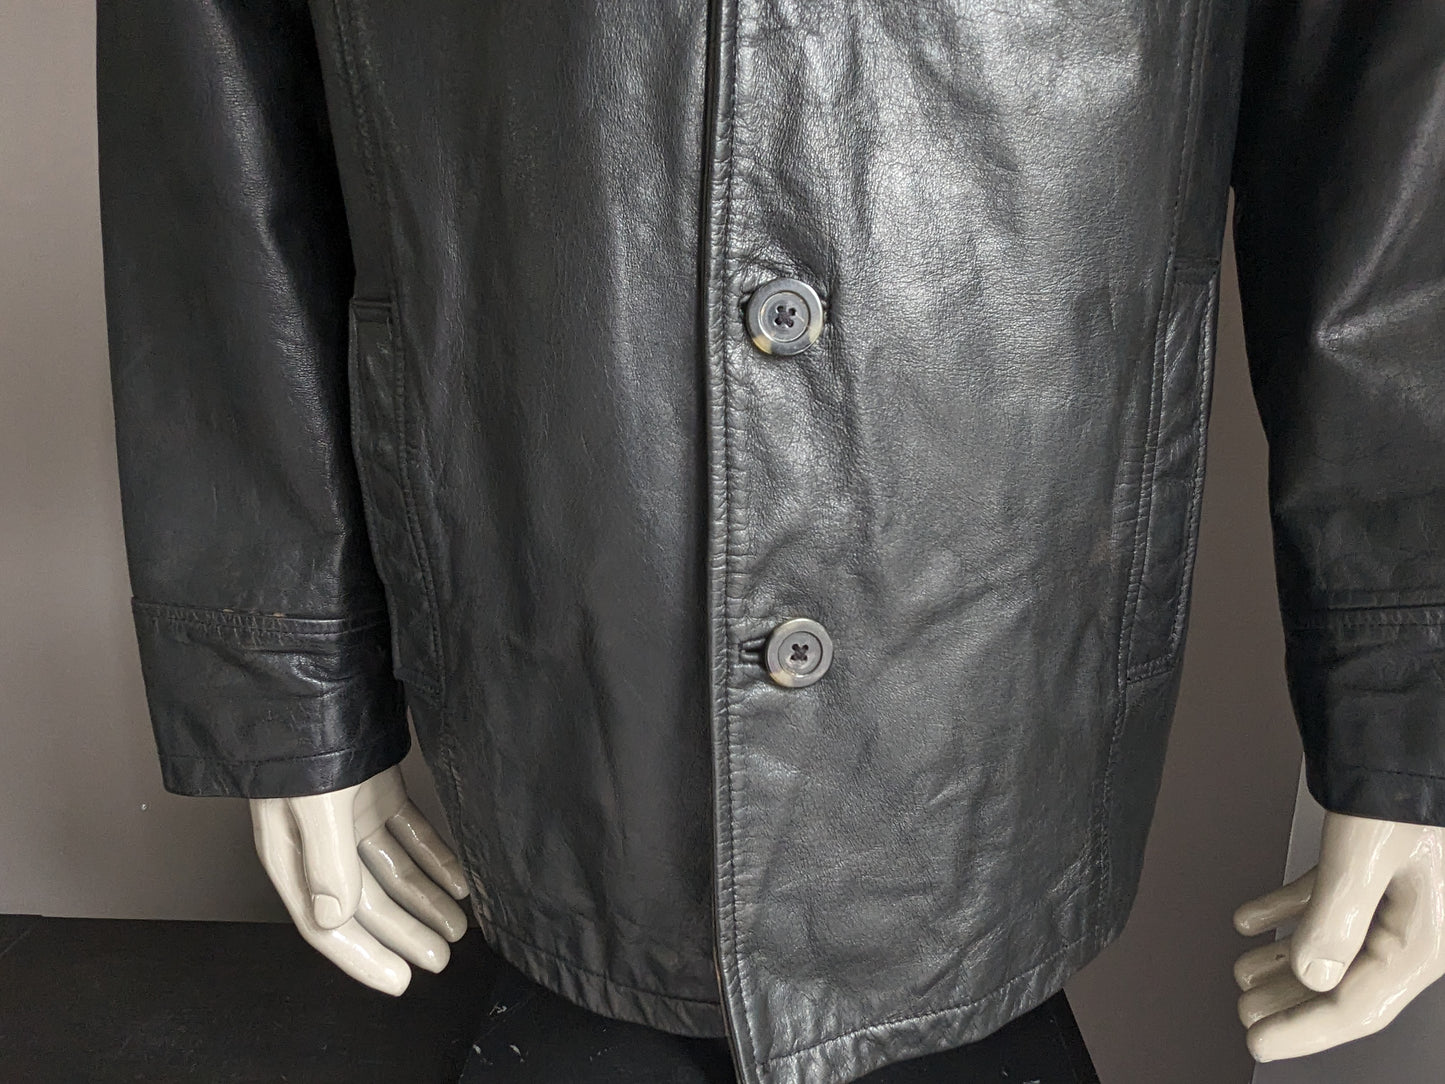 Chaqueta / chaqueta de cuero con botones. Color negro. Tamaño xl.